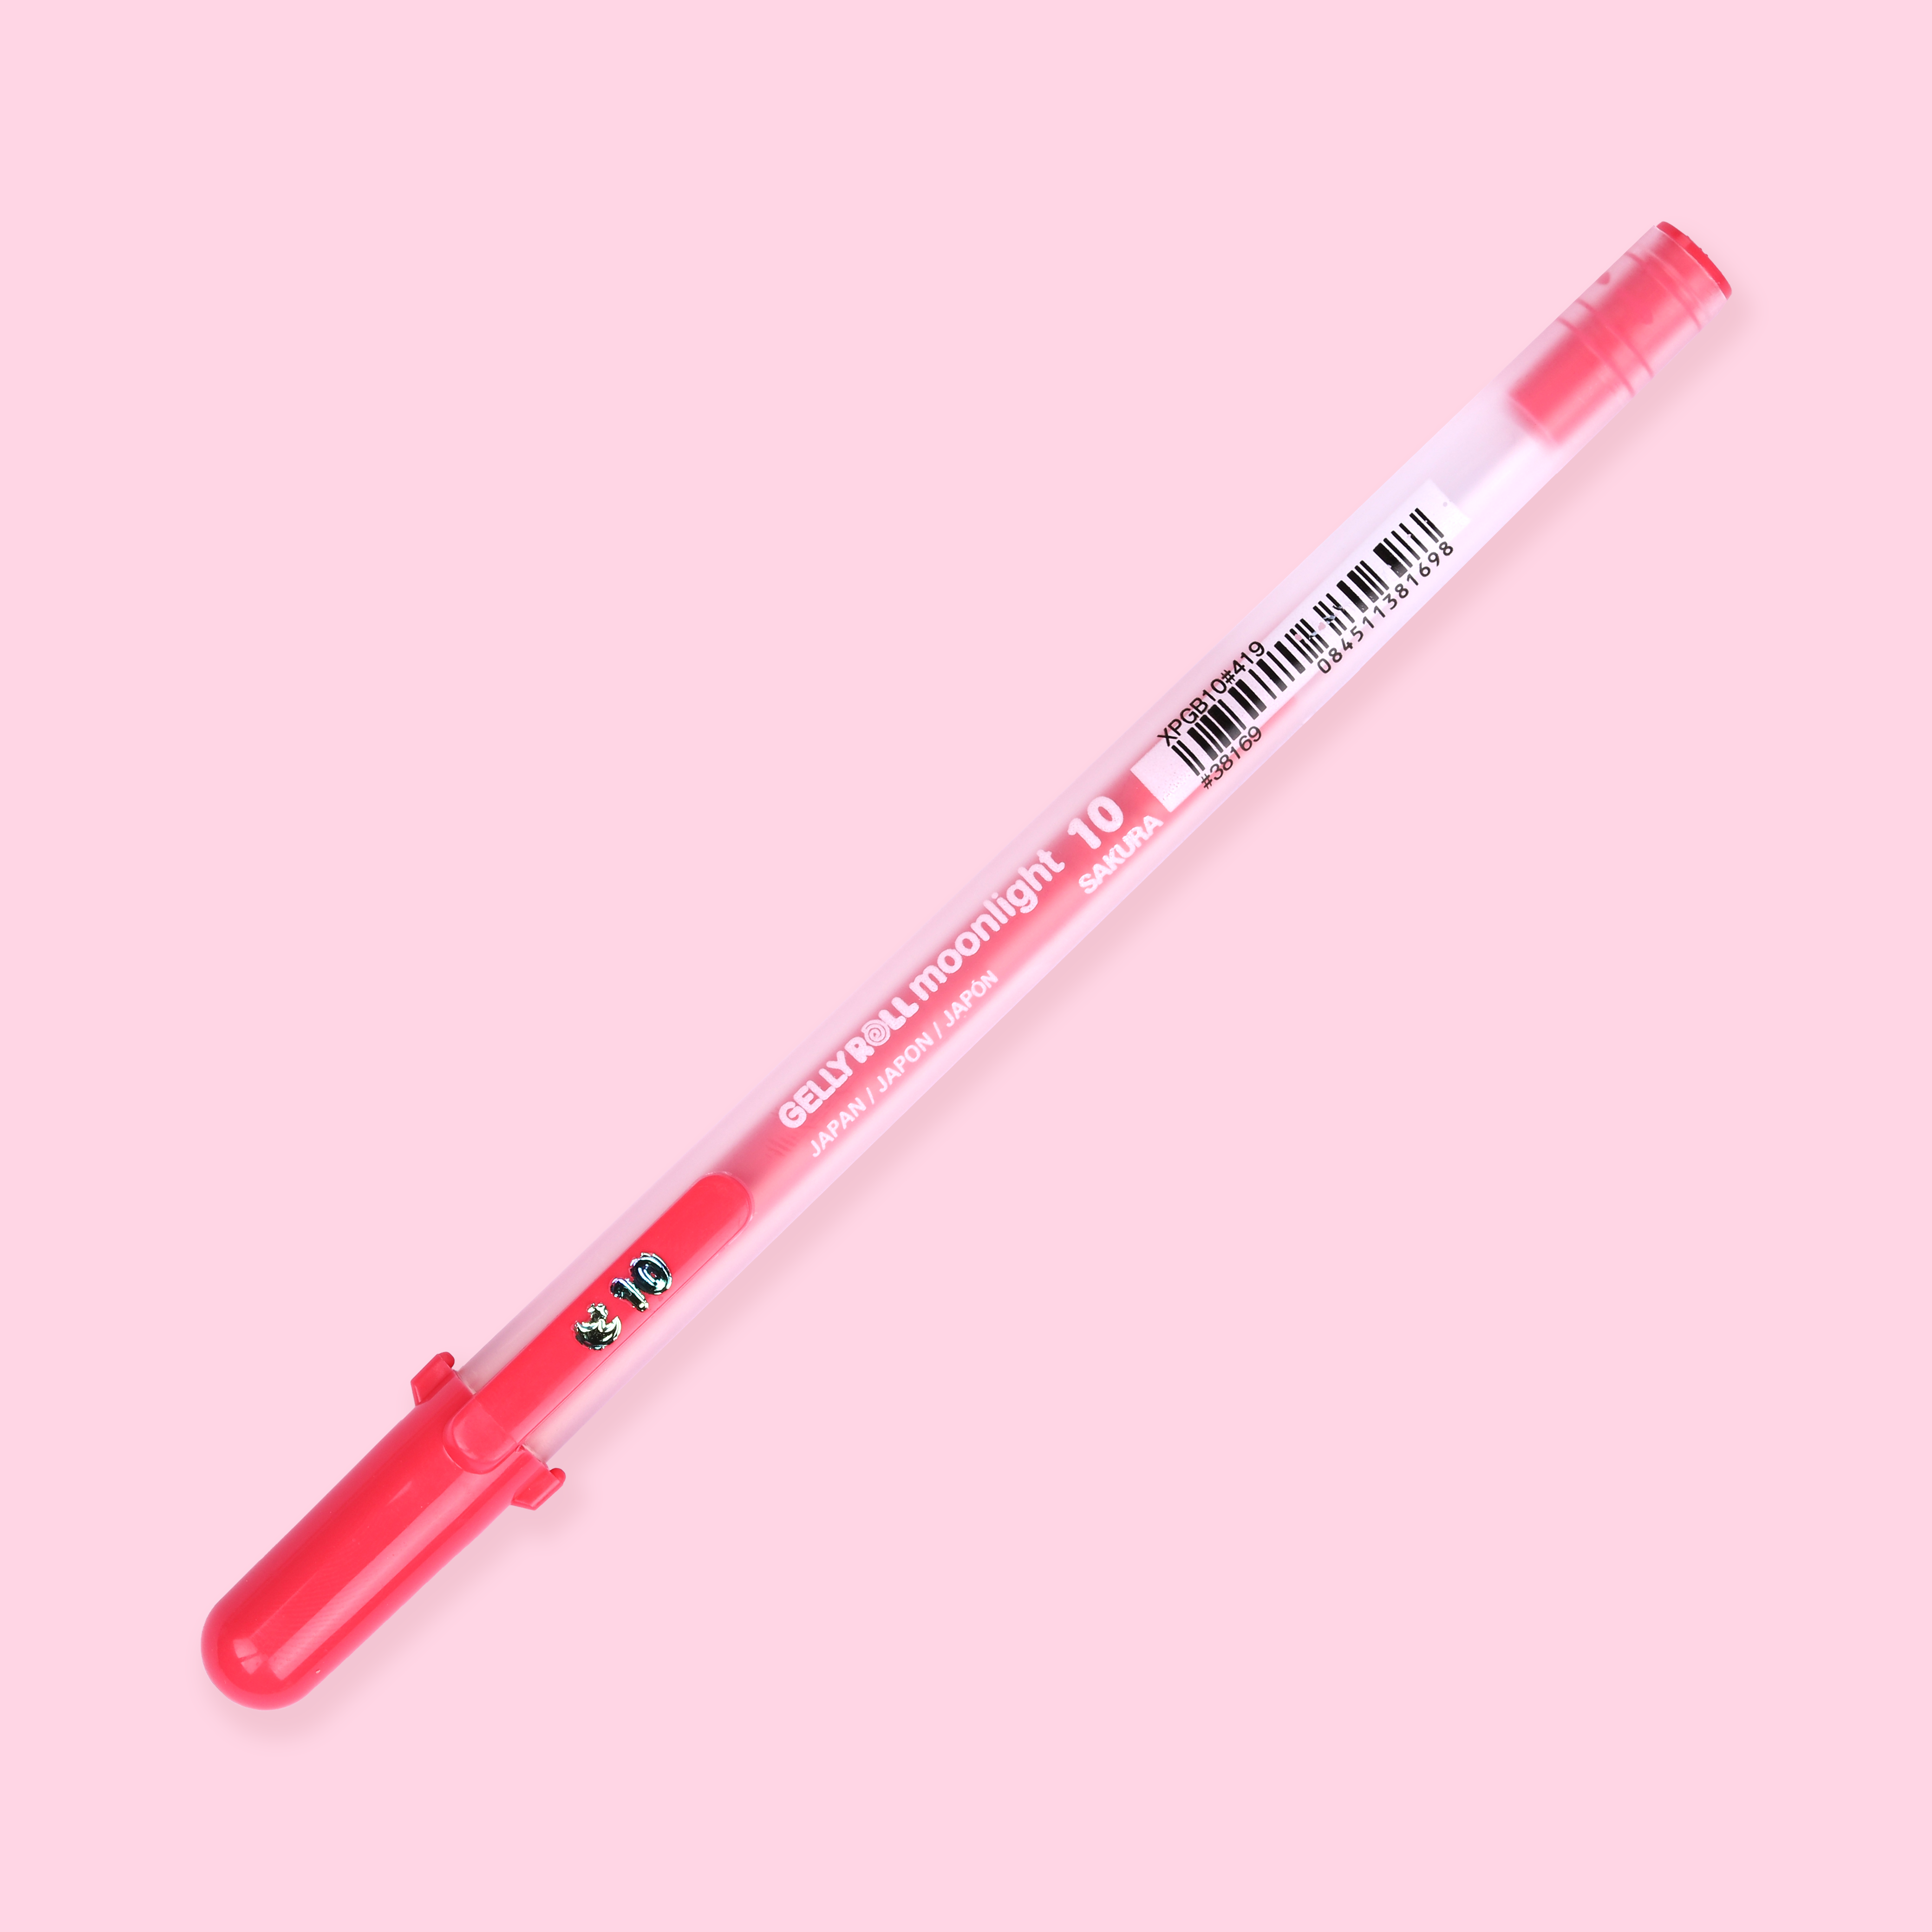 Sakura Gelly Roll Moonlight Gel Pen 1.0mm Red (38169) – Everything